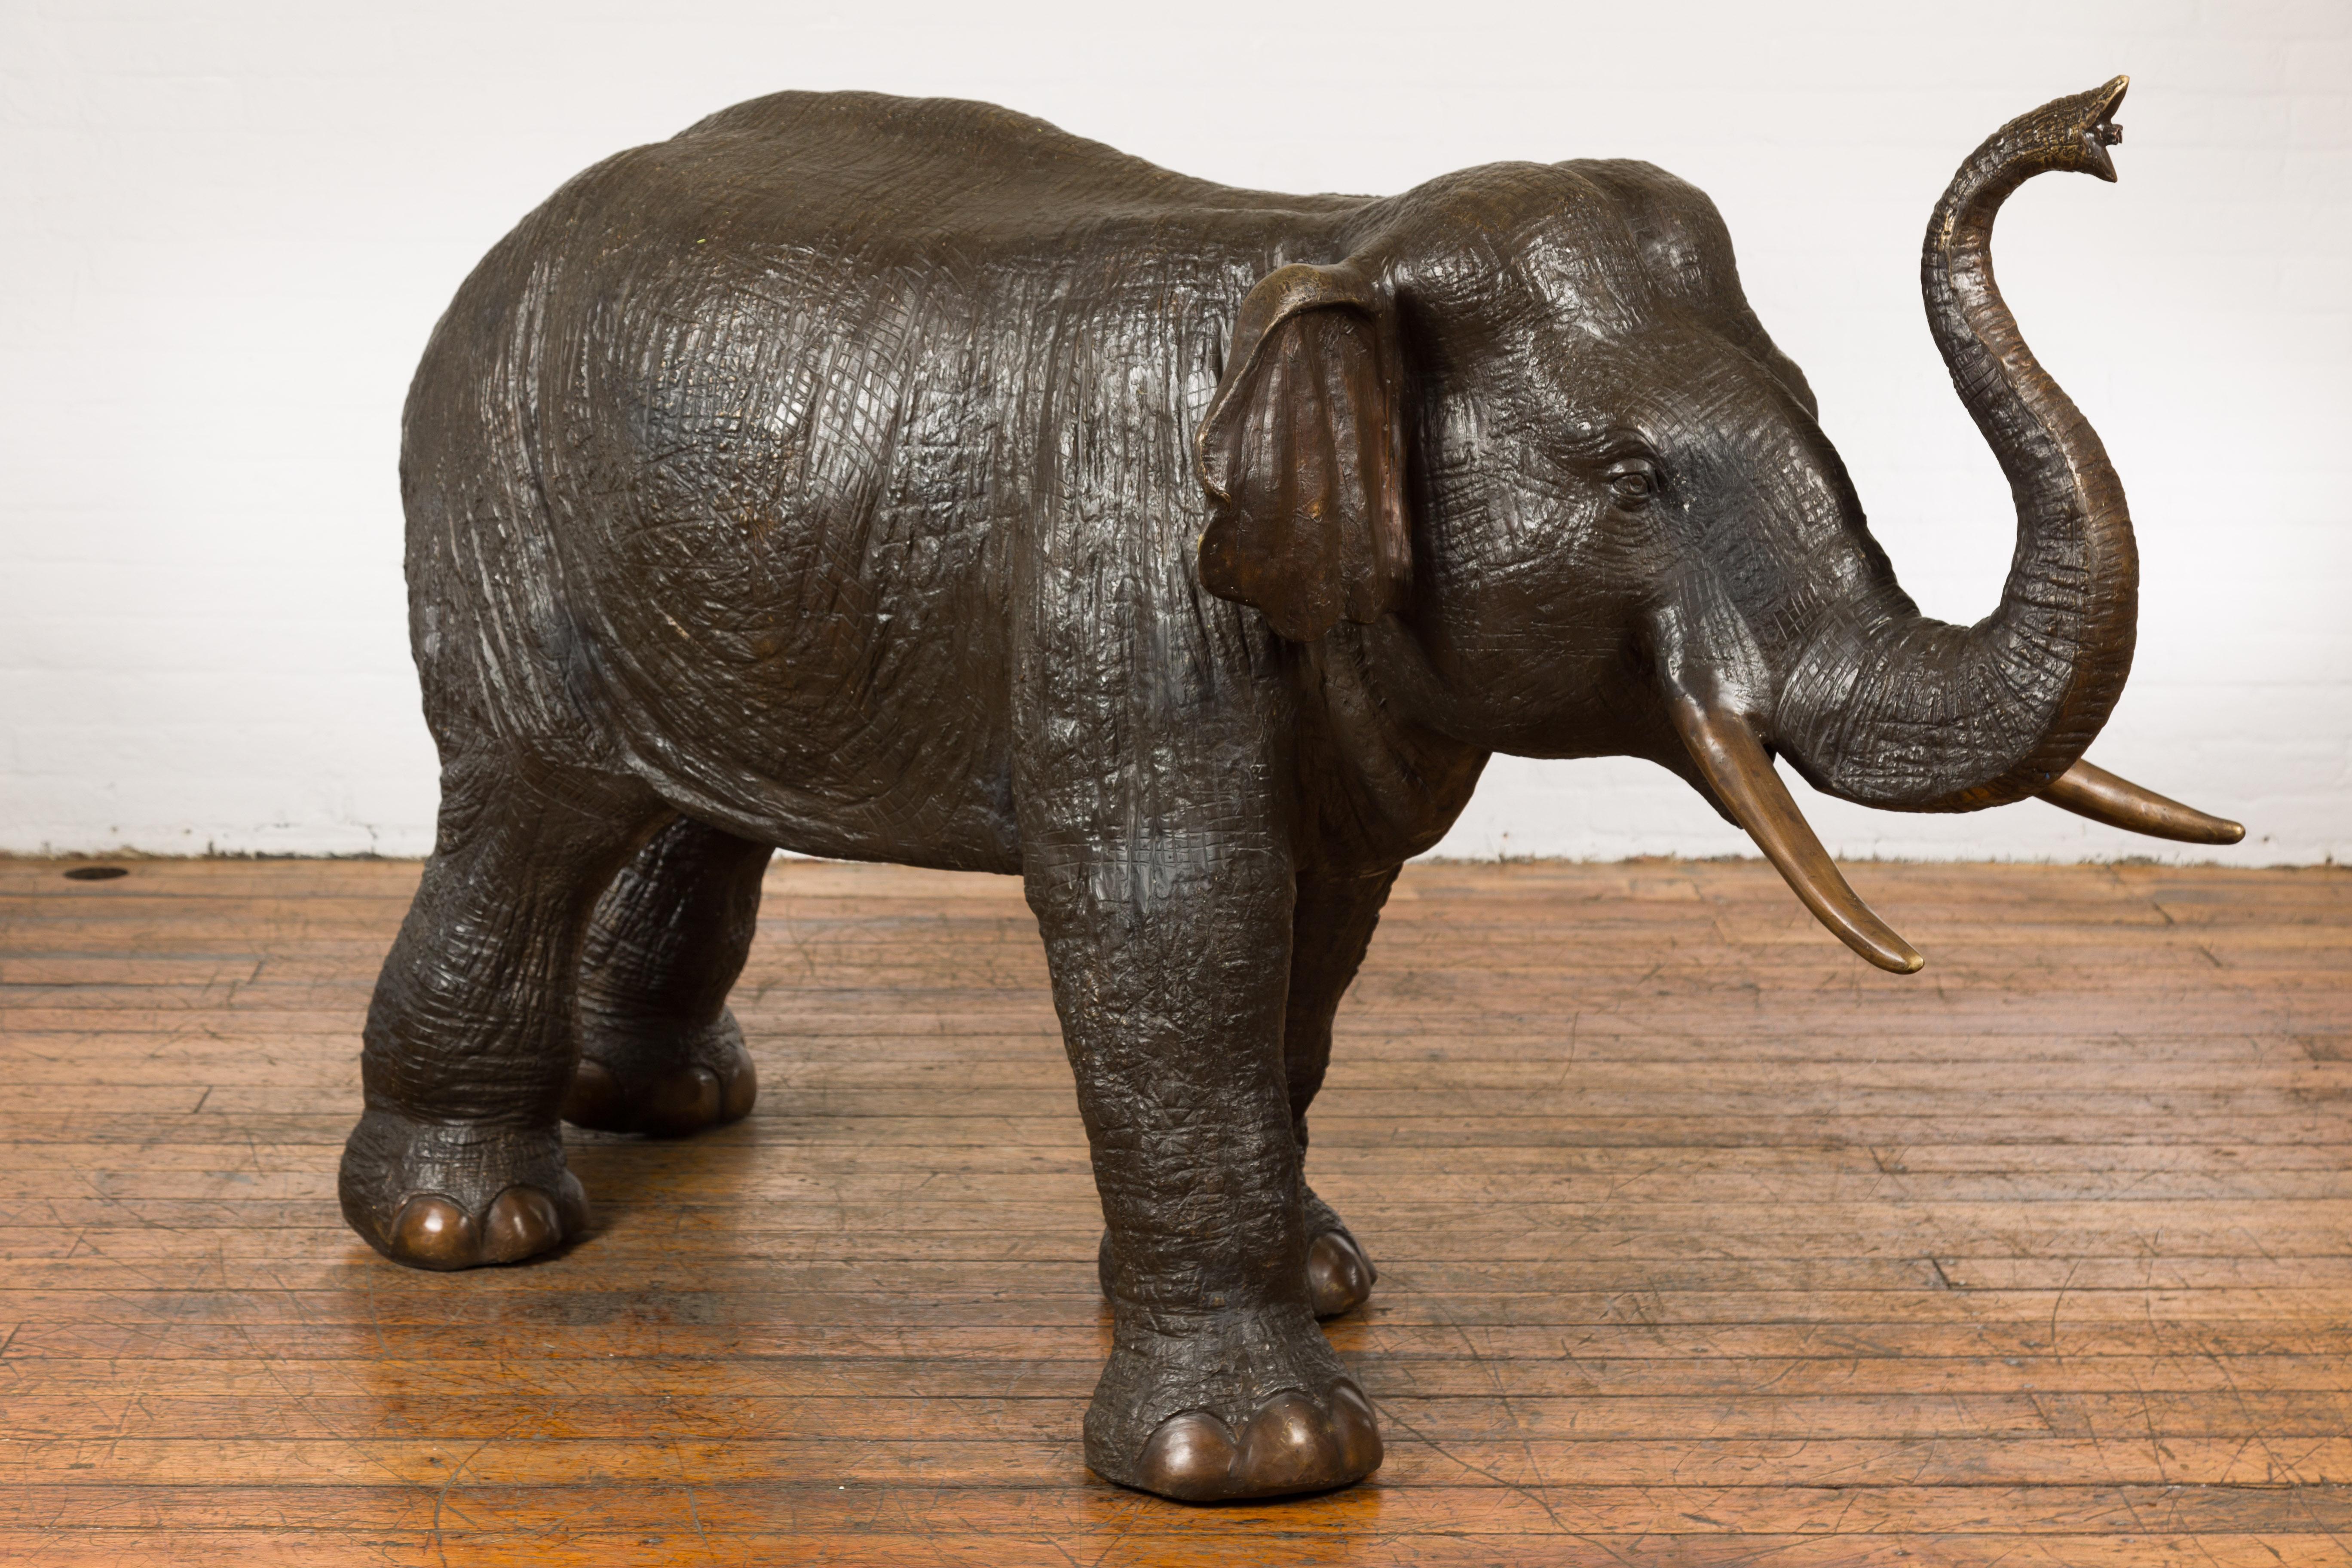 Elefantenplastik aus Bronze in Form eines Springbrunnens, hergestellt im Wachsausschmelzverfahren. Werten Sie Ihre Einrichtung mit dieser bemerkenswerten Elefanten-Gartenskulptur aus Bronze auf, die auf einzigartige Weise als Springbrunnen dient.